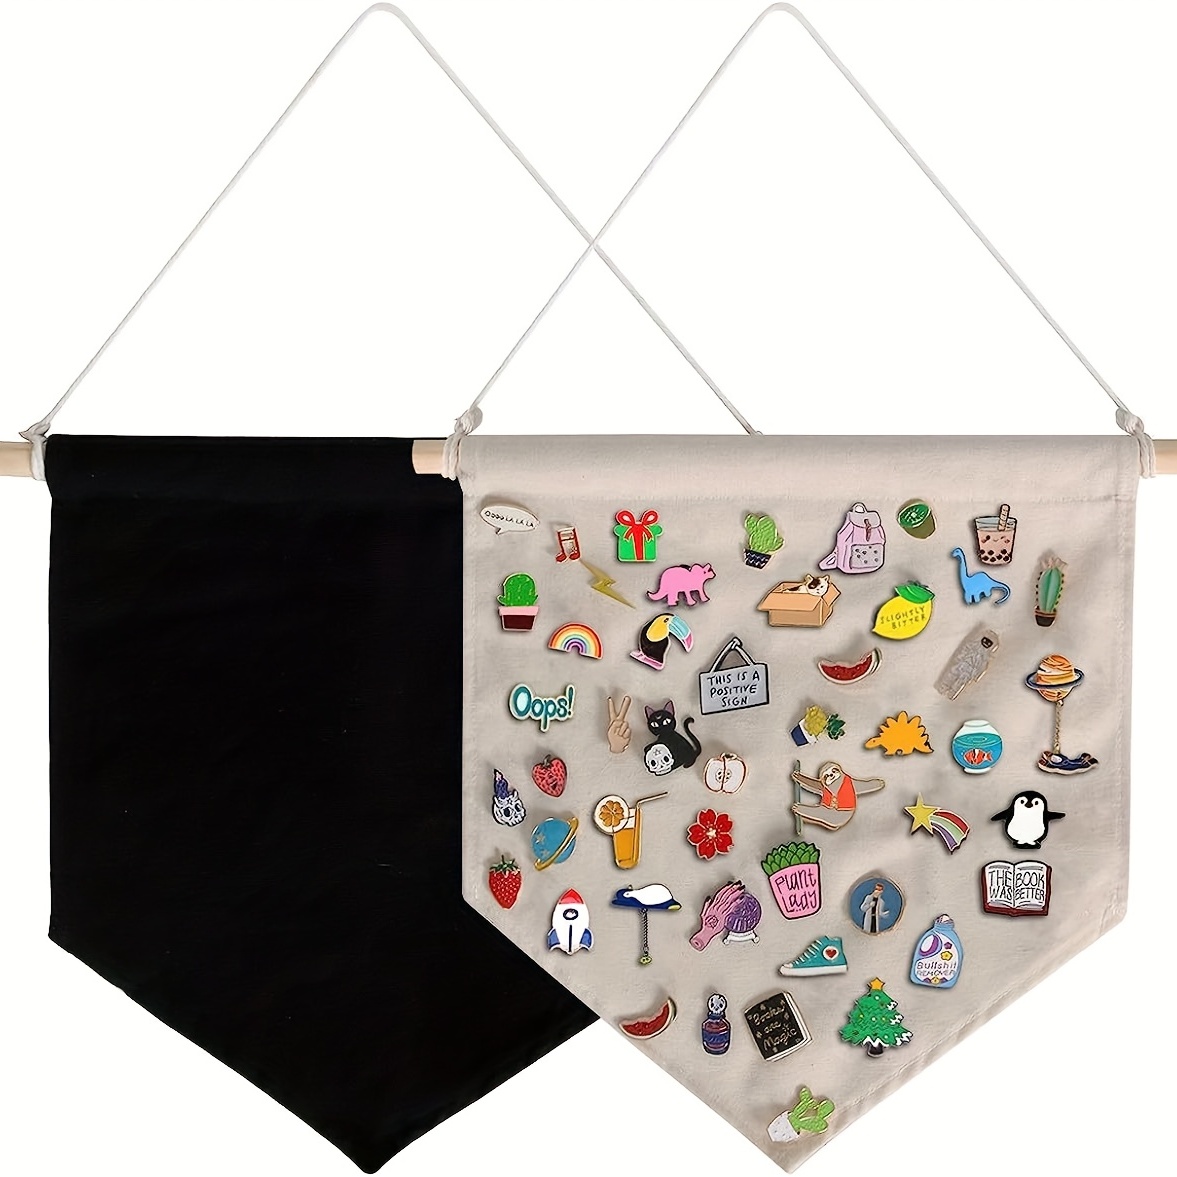 Large Pin Display, Pin Badge Display, Canvas Pennant, Enamel Pin Display,  Enamel Pin Holder, Wall Pennant, Wall Hanging Flag, Pin Banner 